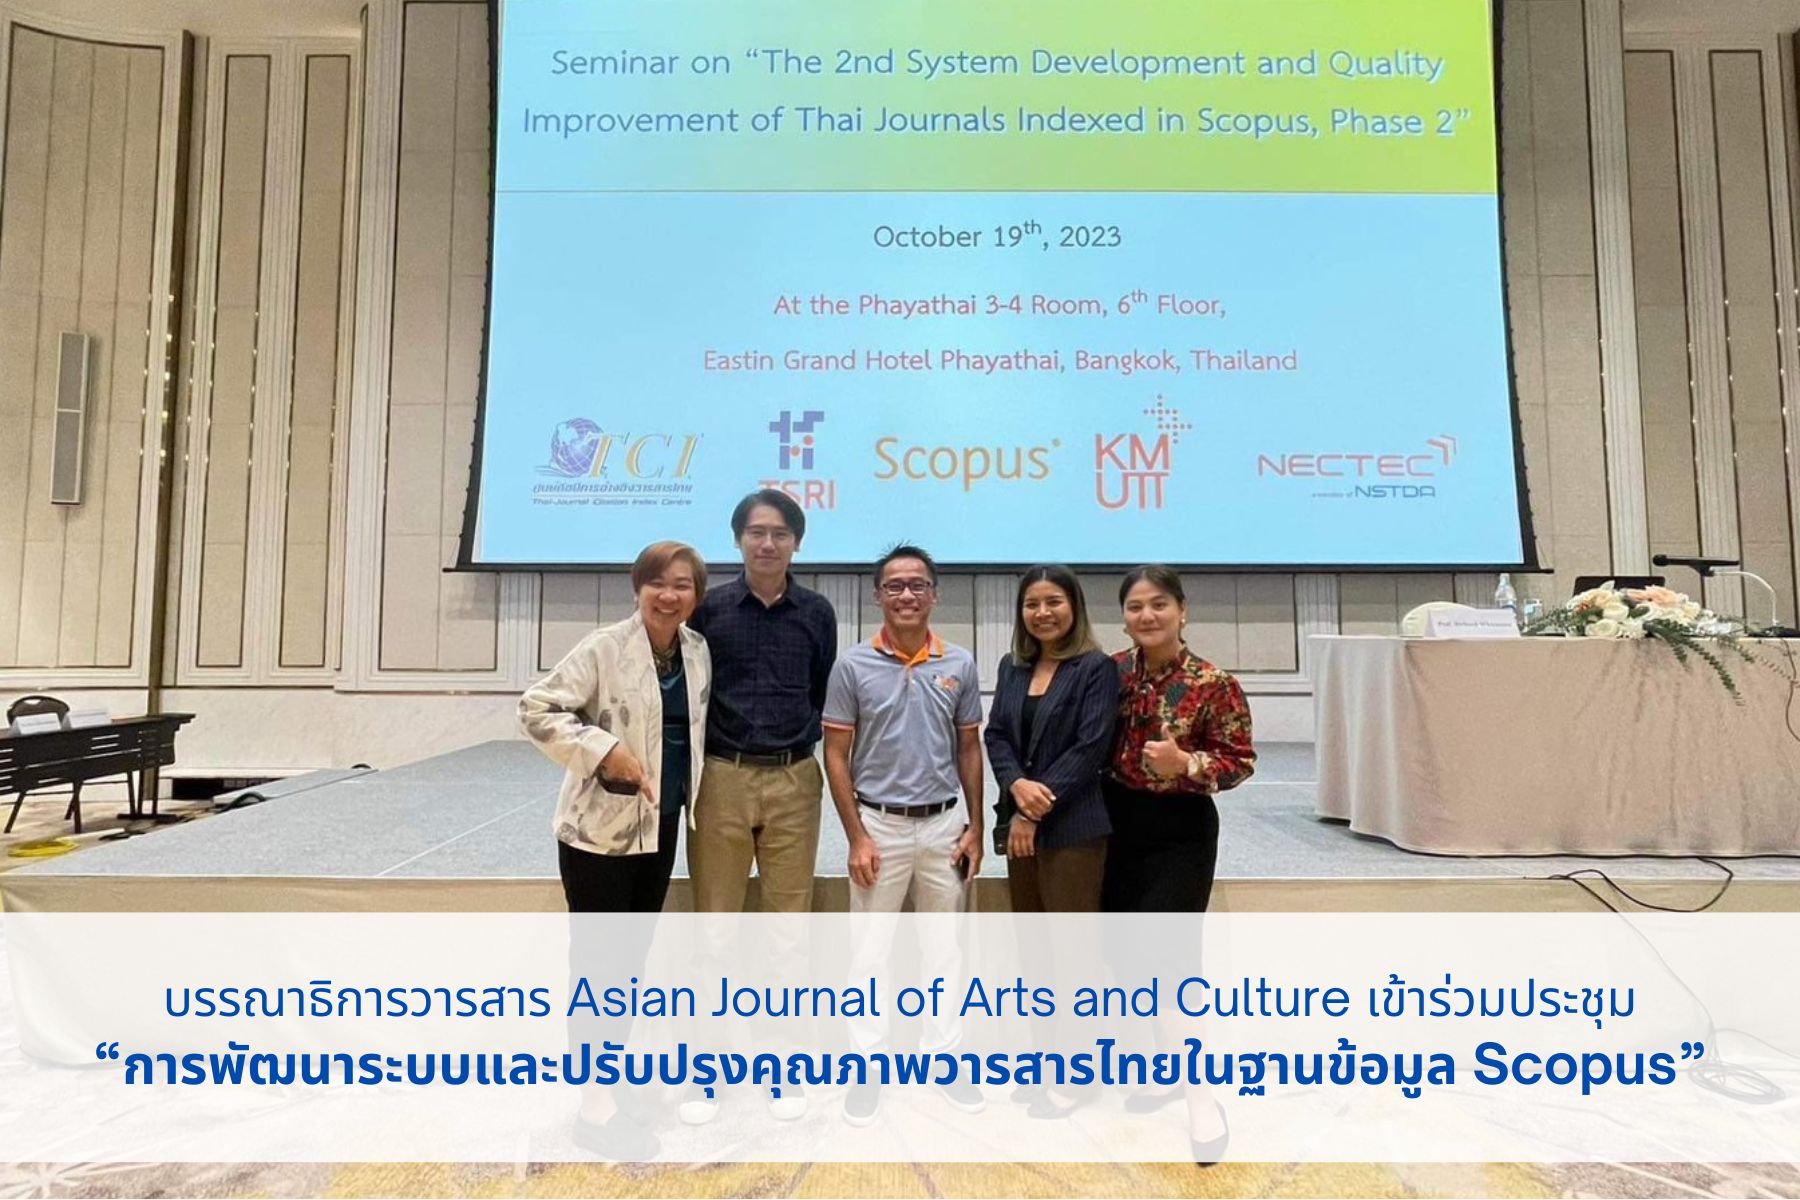 บรรณาธิการวารสาร Asian Journal of Arts and Culture เข้าร่วมประชุม “การพัฒนาระบบและปรับปรุงคุณภาพวารสารไทยในฐานข้อมูล Scopus ระยะที่ 2”